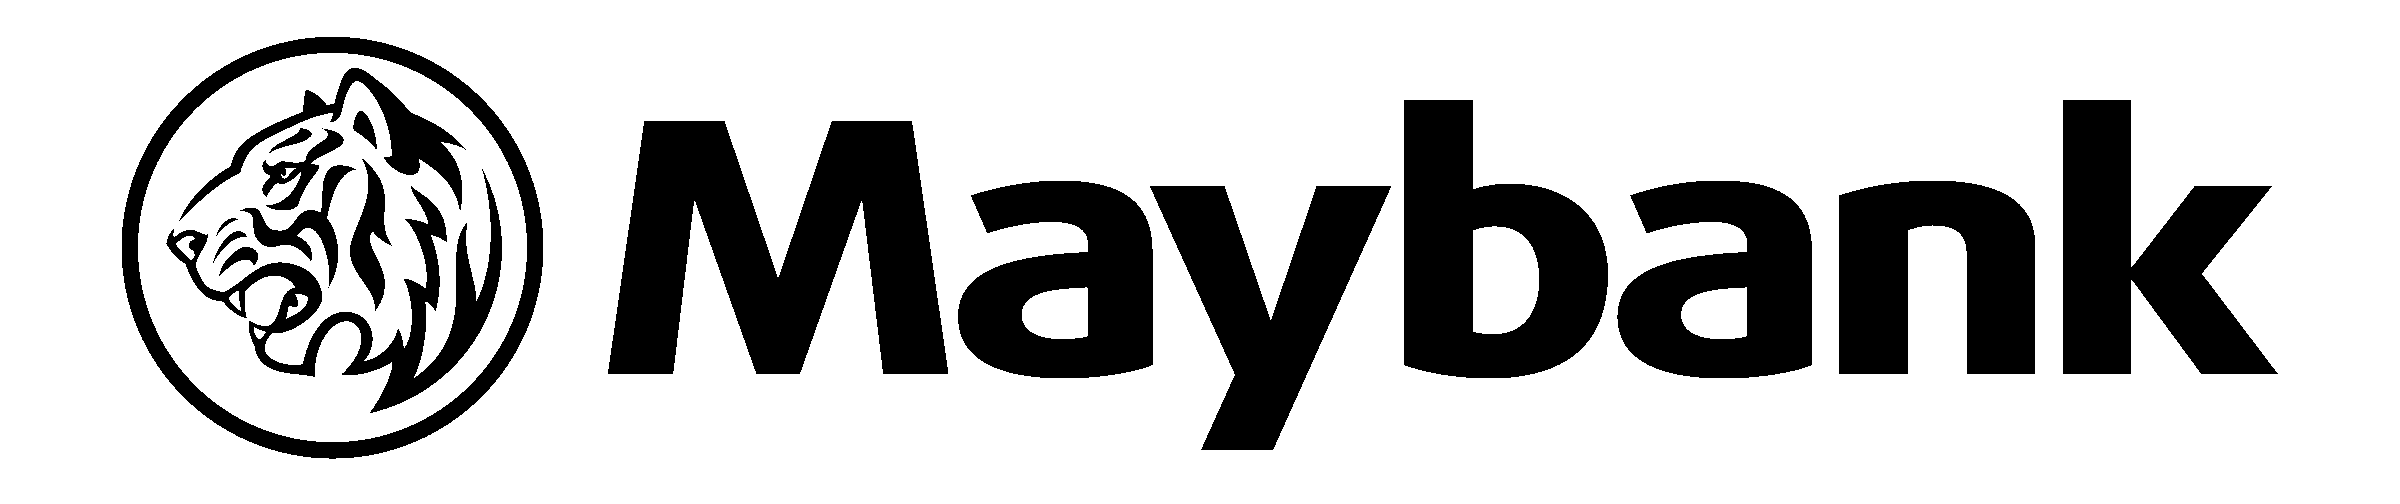 Maybank Logo - Maybank Logo PNG Transparent & SVG Vector - Freebie Supply